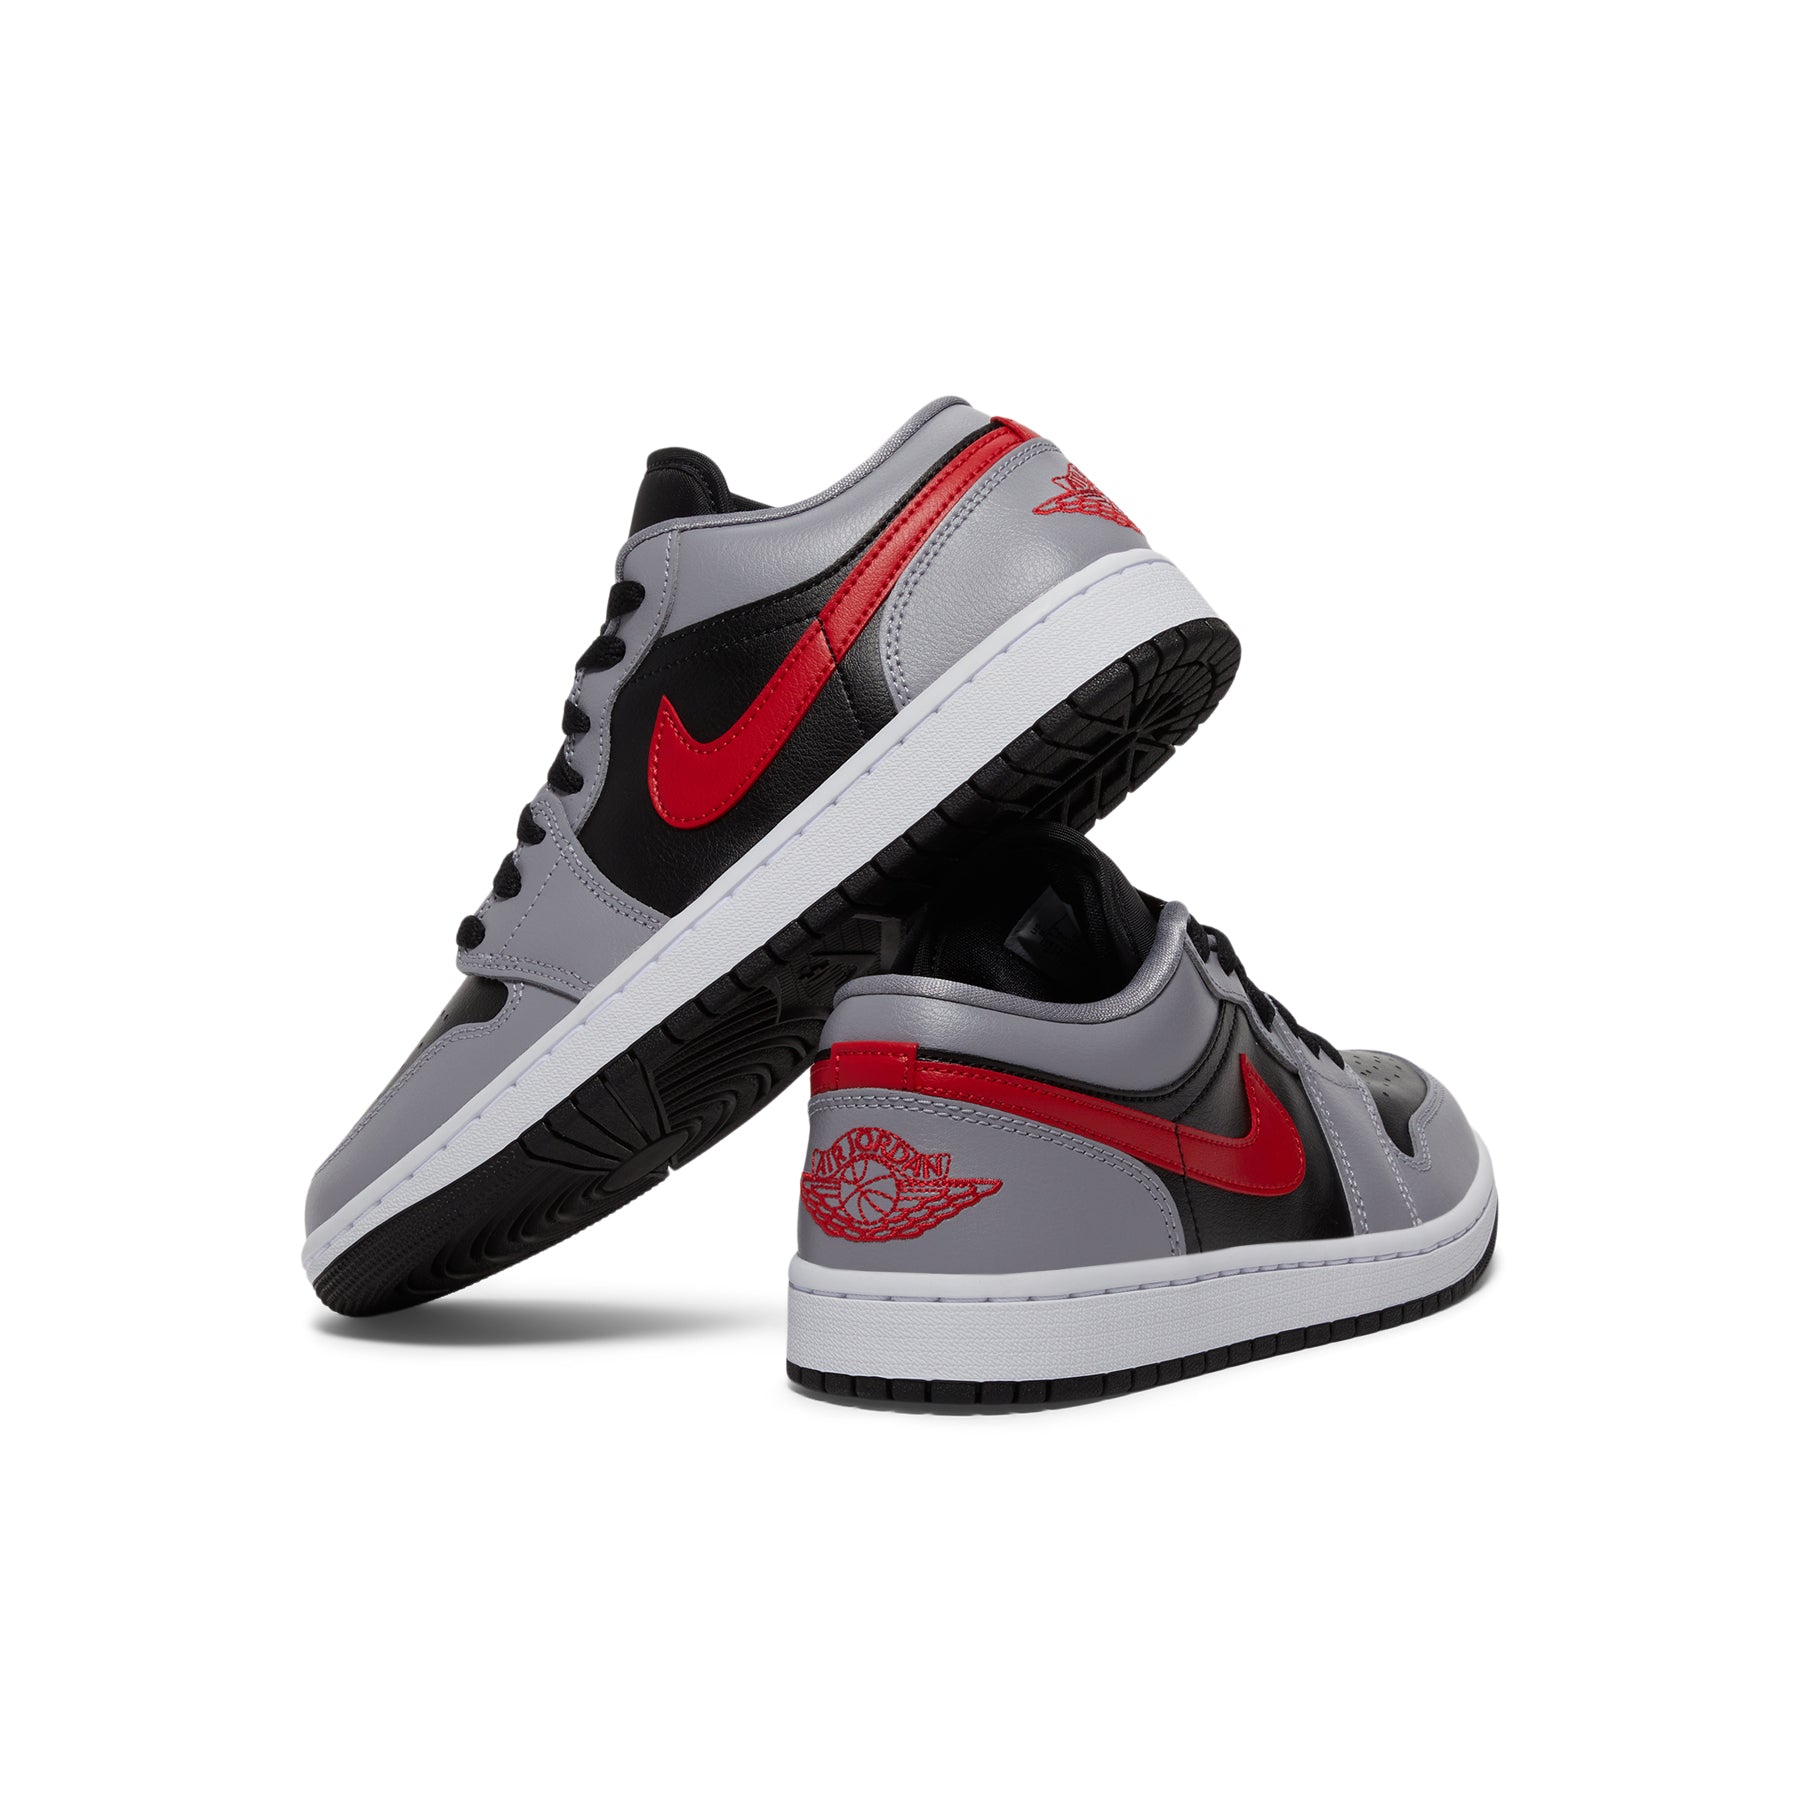 Nike Air Jordan 1 Low Light Smoke Grey Red White Black GS UK 3 4 5 6 7 US  New